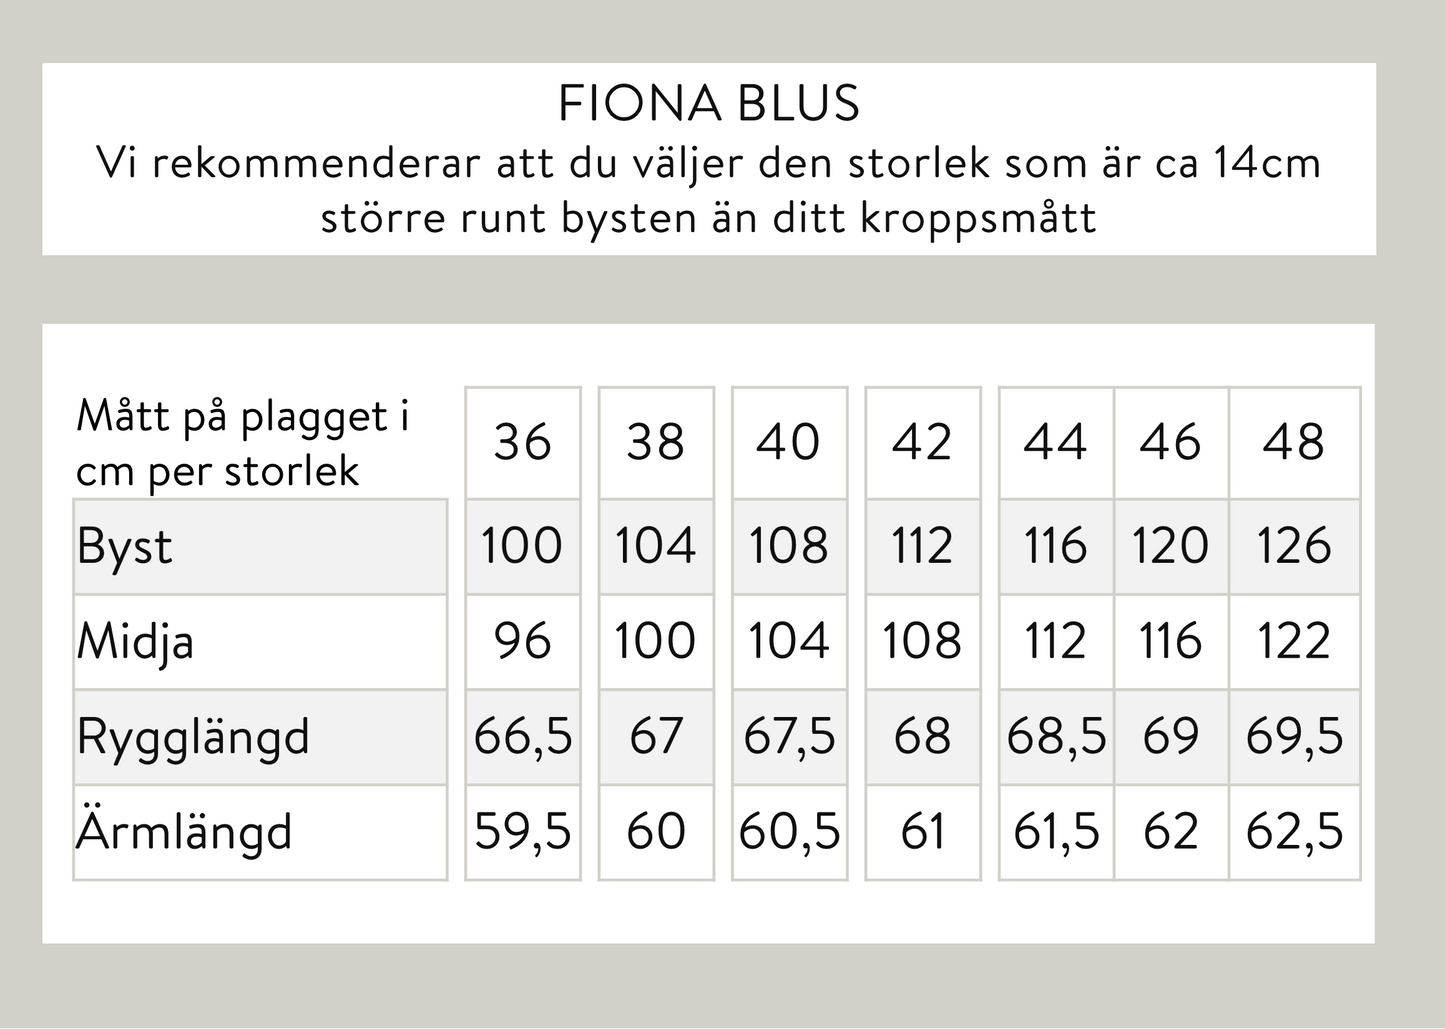 Fiona blus - Offwhite